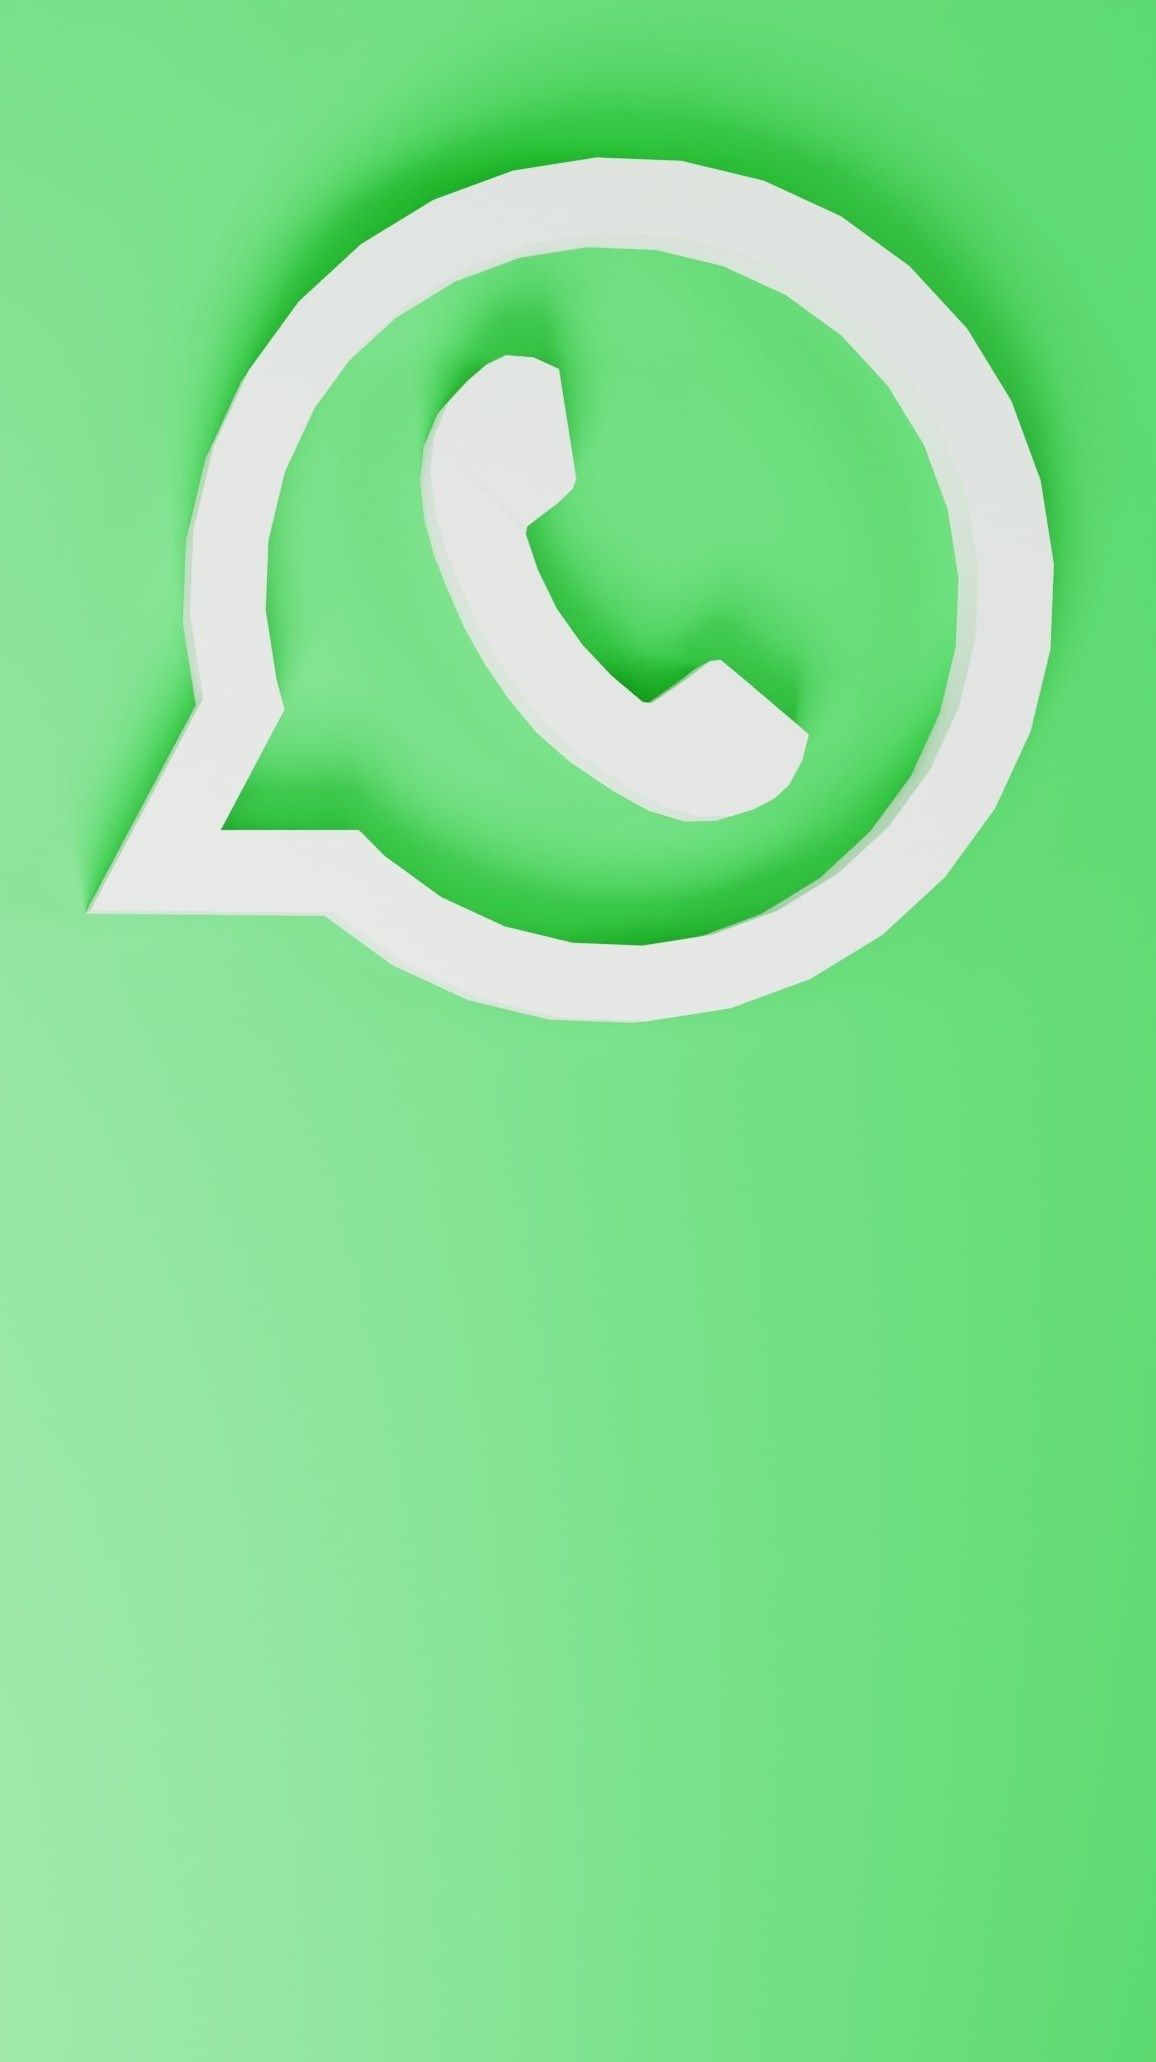 7 Coisas Que Vão Fazer Você Usar O Whatsapp De Um Jeito Diferente 4002